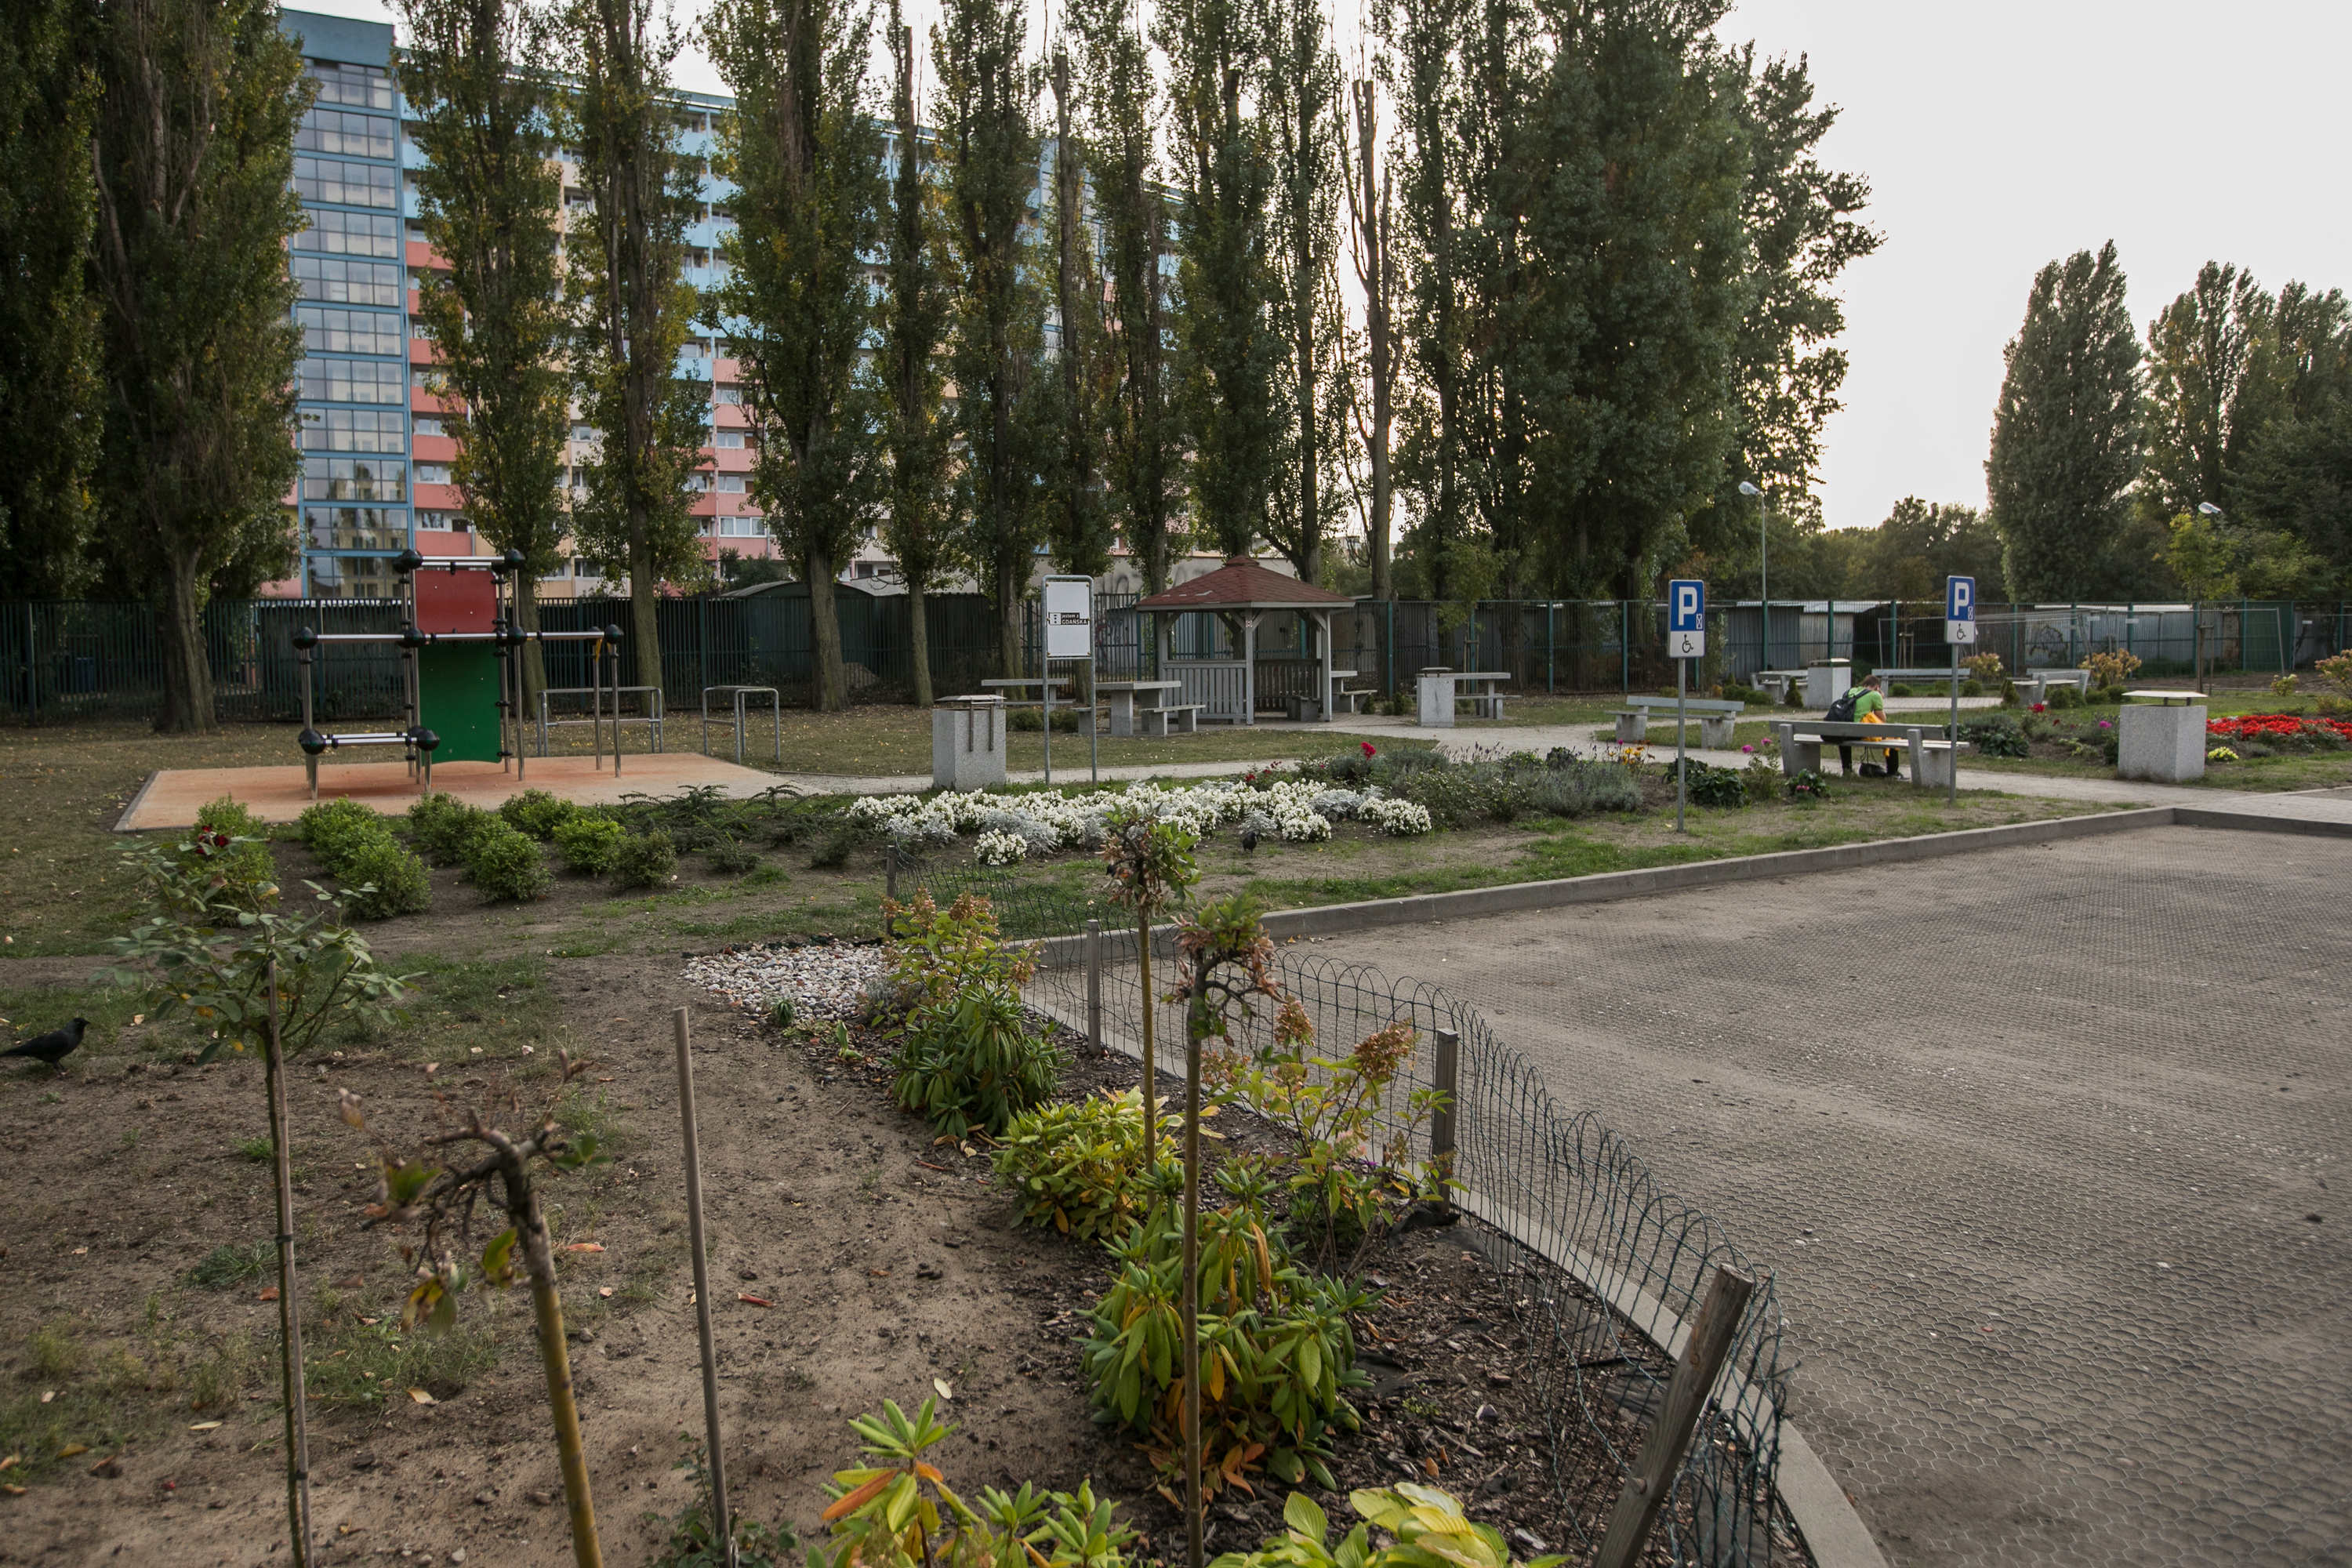 widok na nowe park rekracyjny, z ławkami i zagospodarowaną zielenią